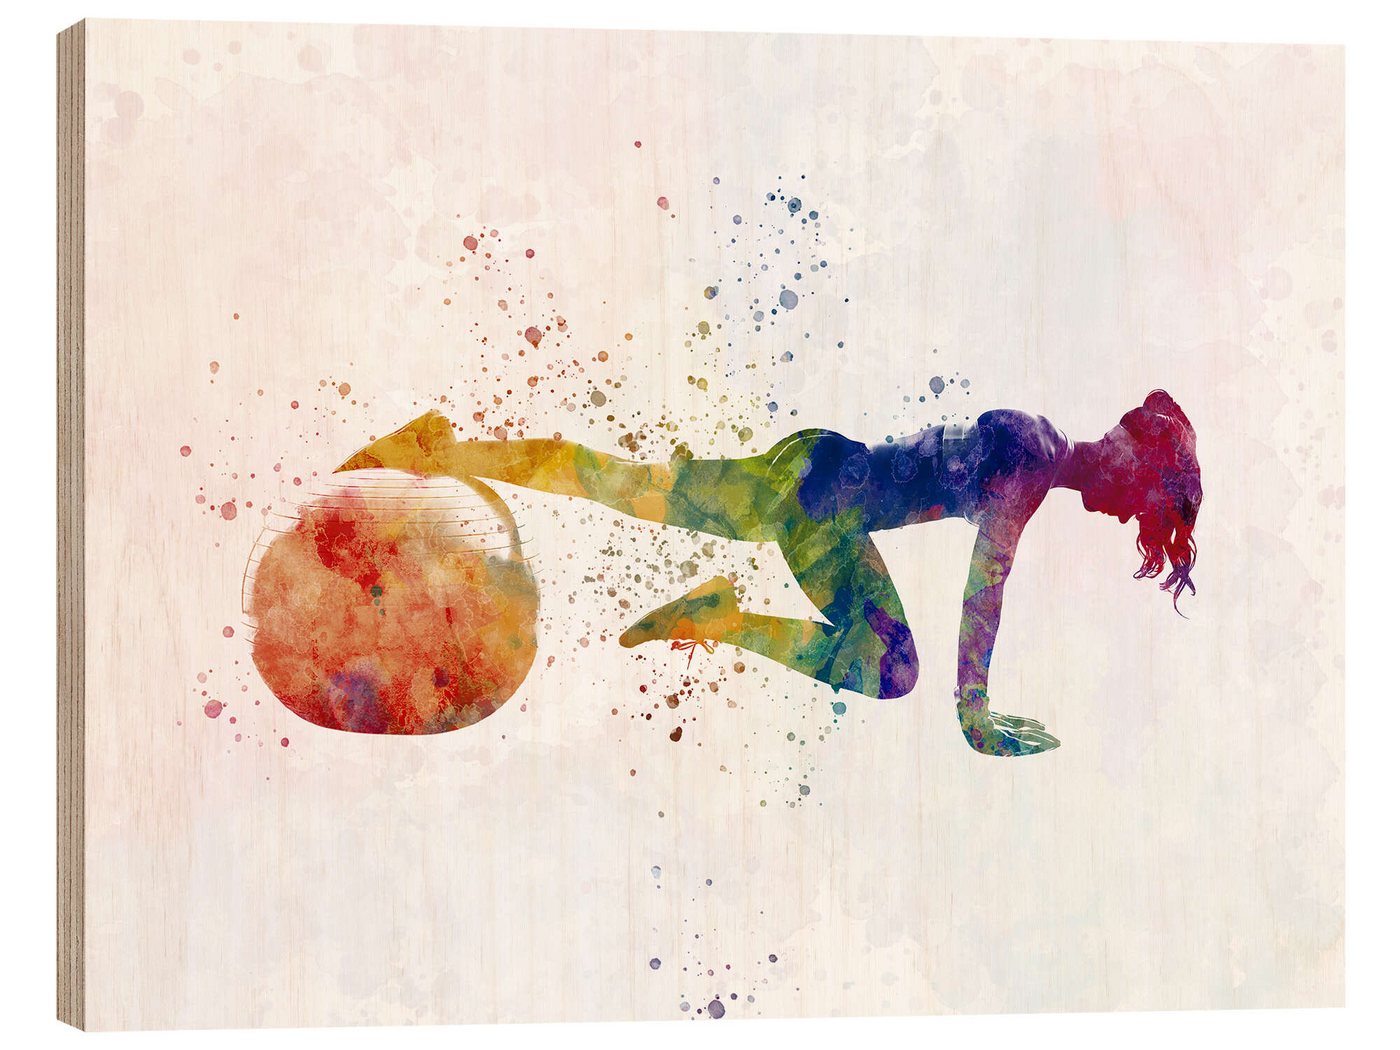 Posterlounge Holzbild nobelart, Fitnessübung mit einem Ball VII, Fitnessraum Illustration von Posterlounge